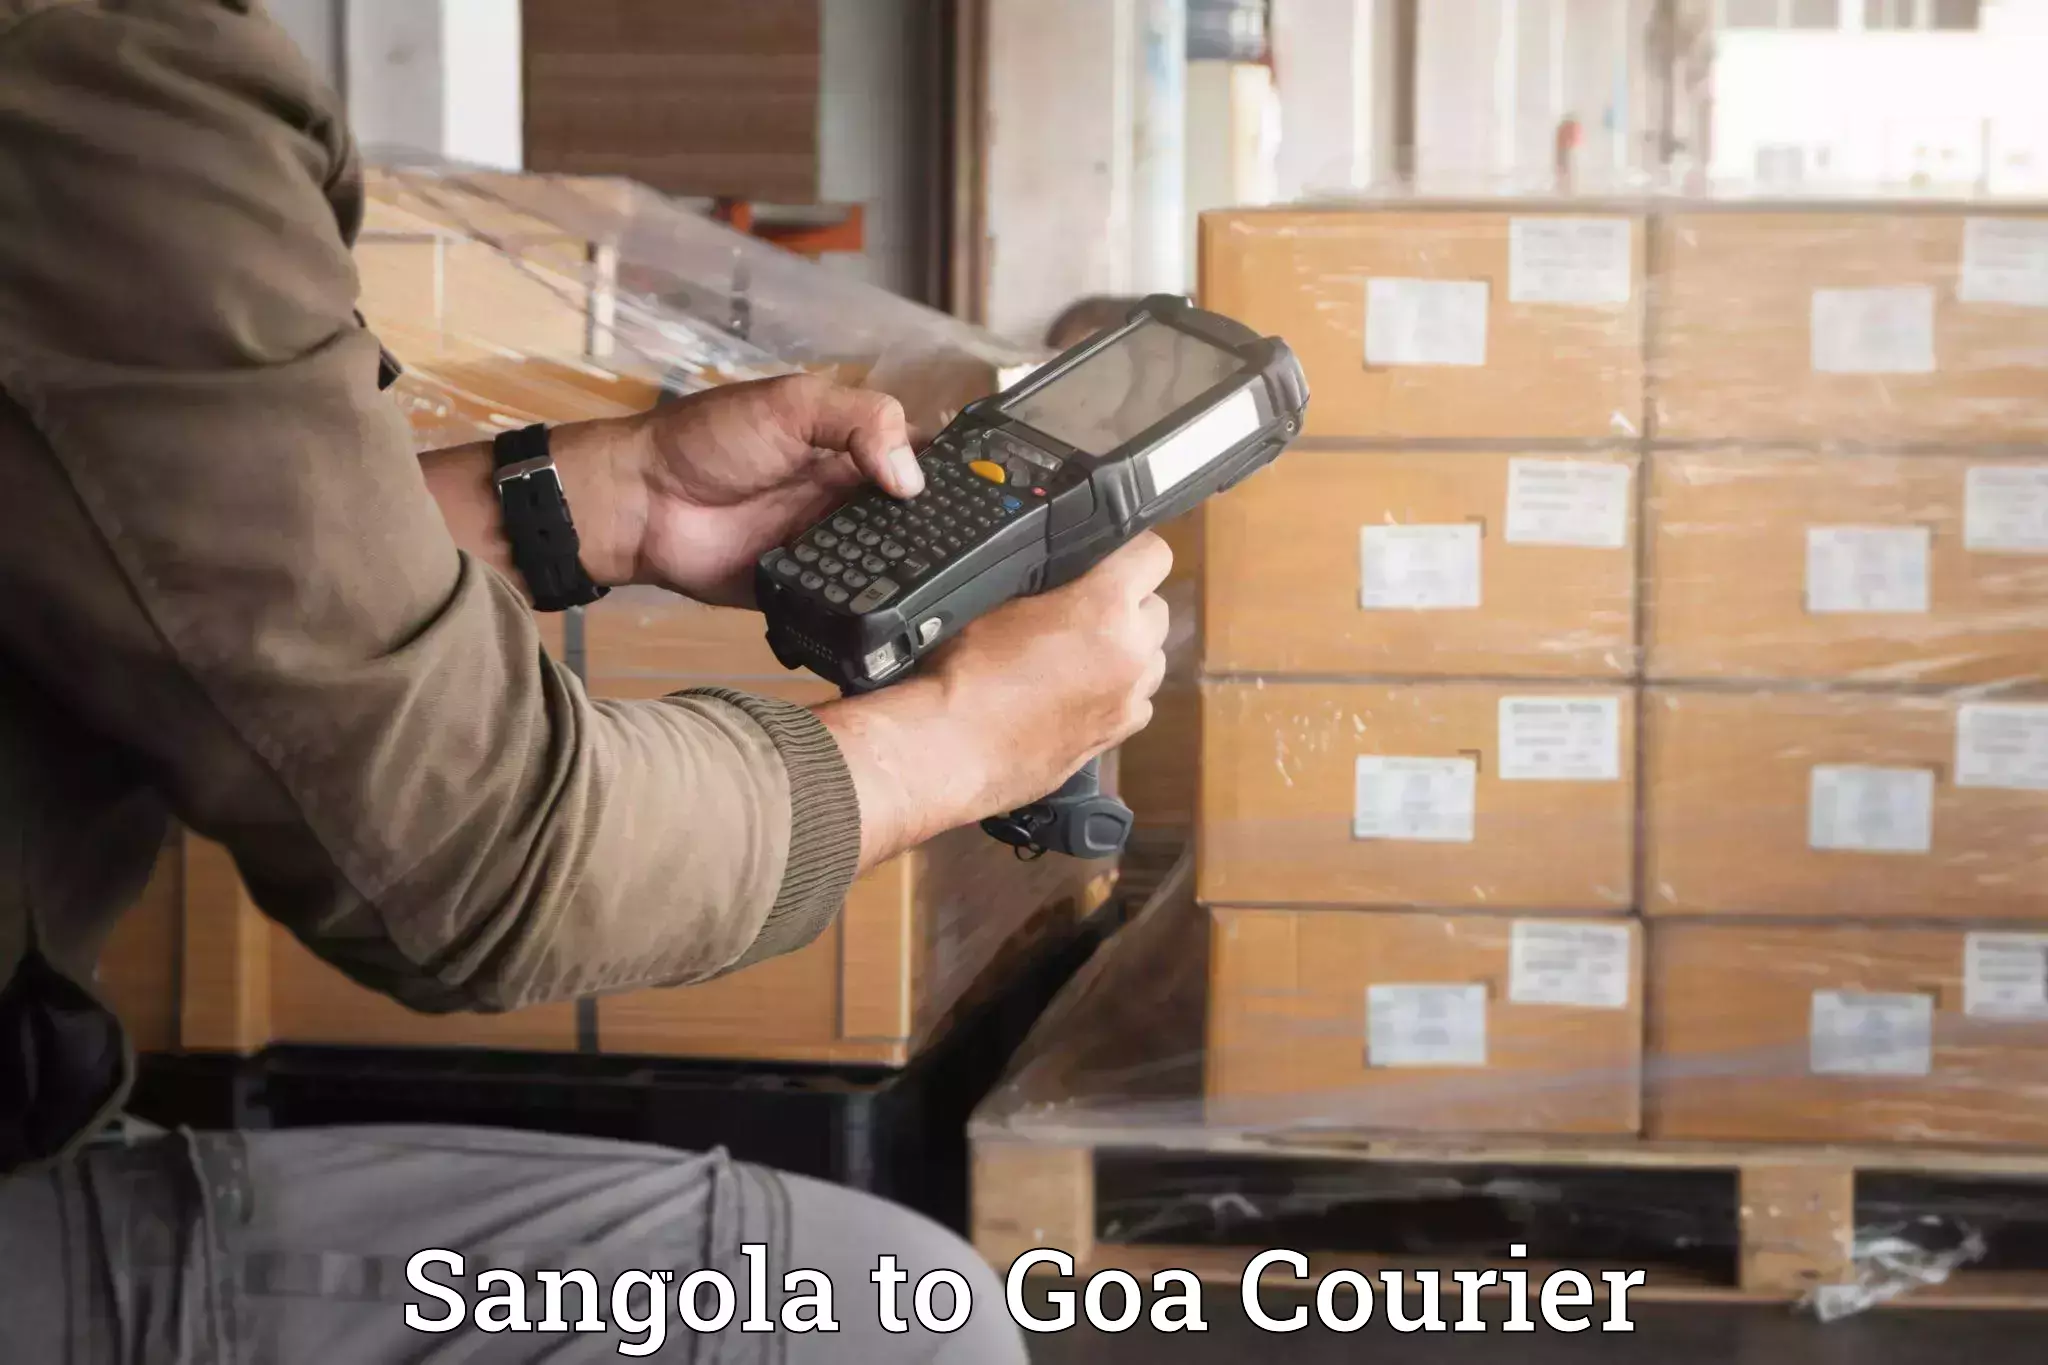 Baggage transport scheduler Sangola to NIT Goa